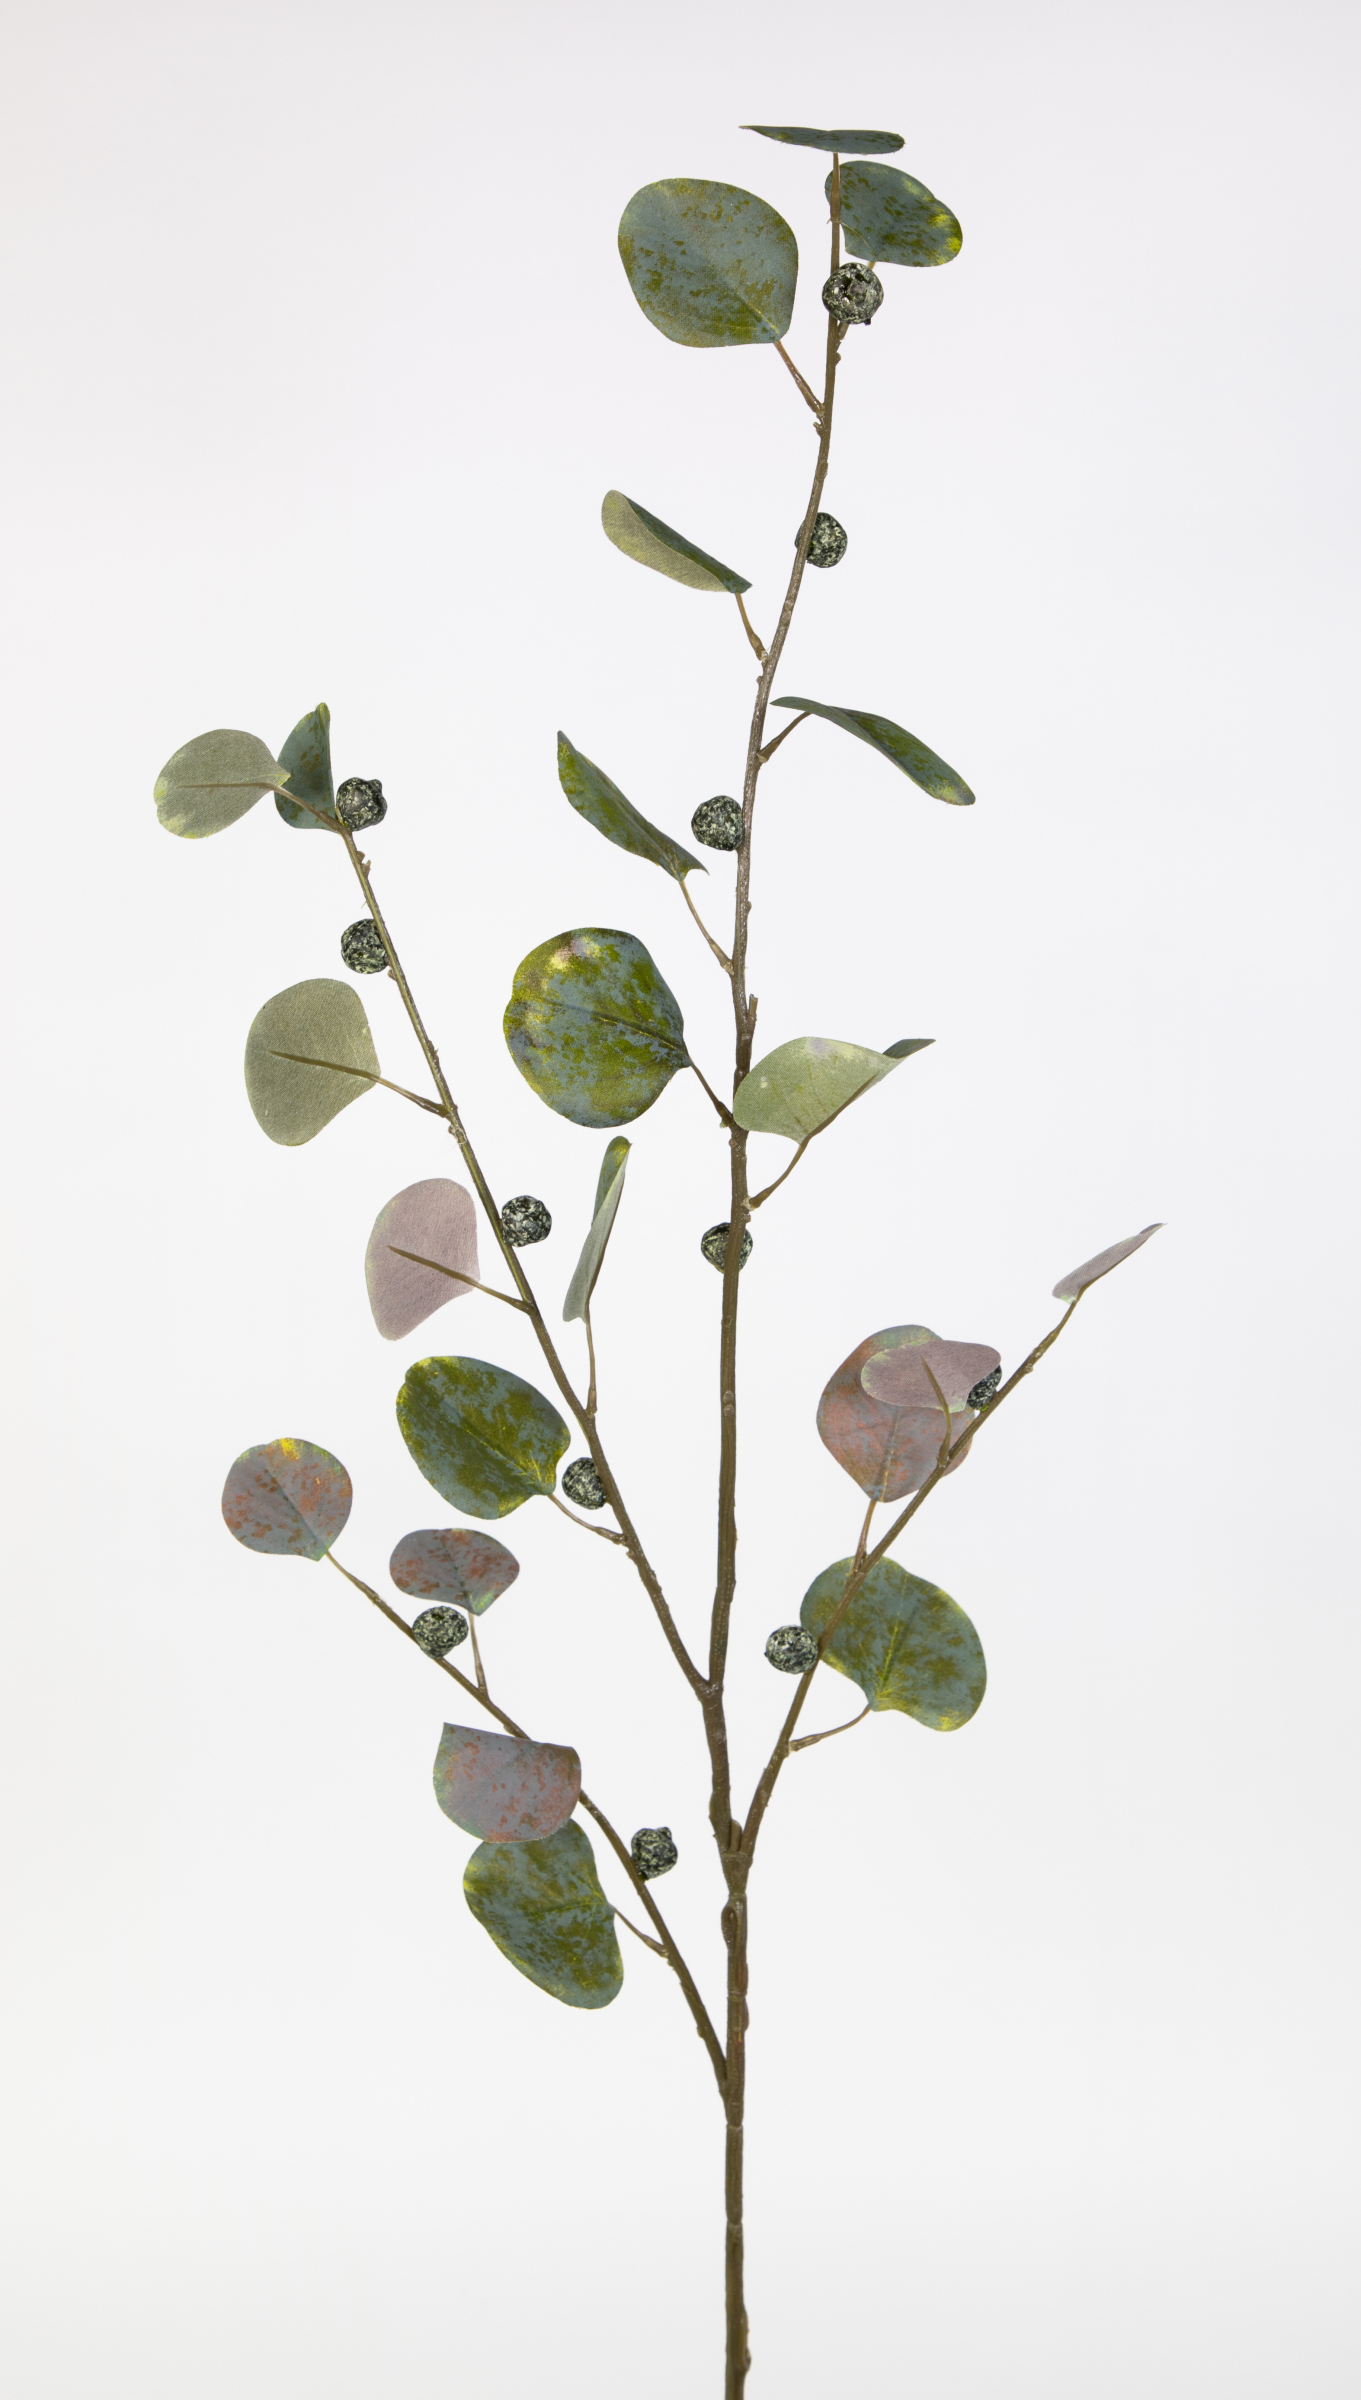 Eukalyptuszweig mit Früchten 110cm Zweige künstliche JA Kunstzweig künstlicher grün Eukalyptus